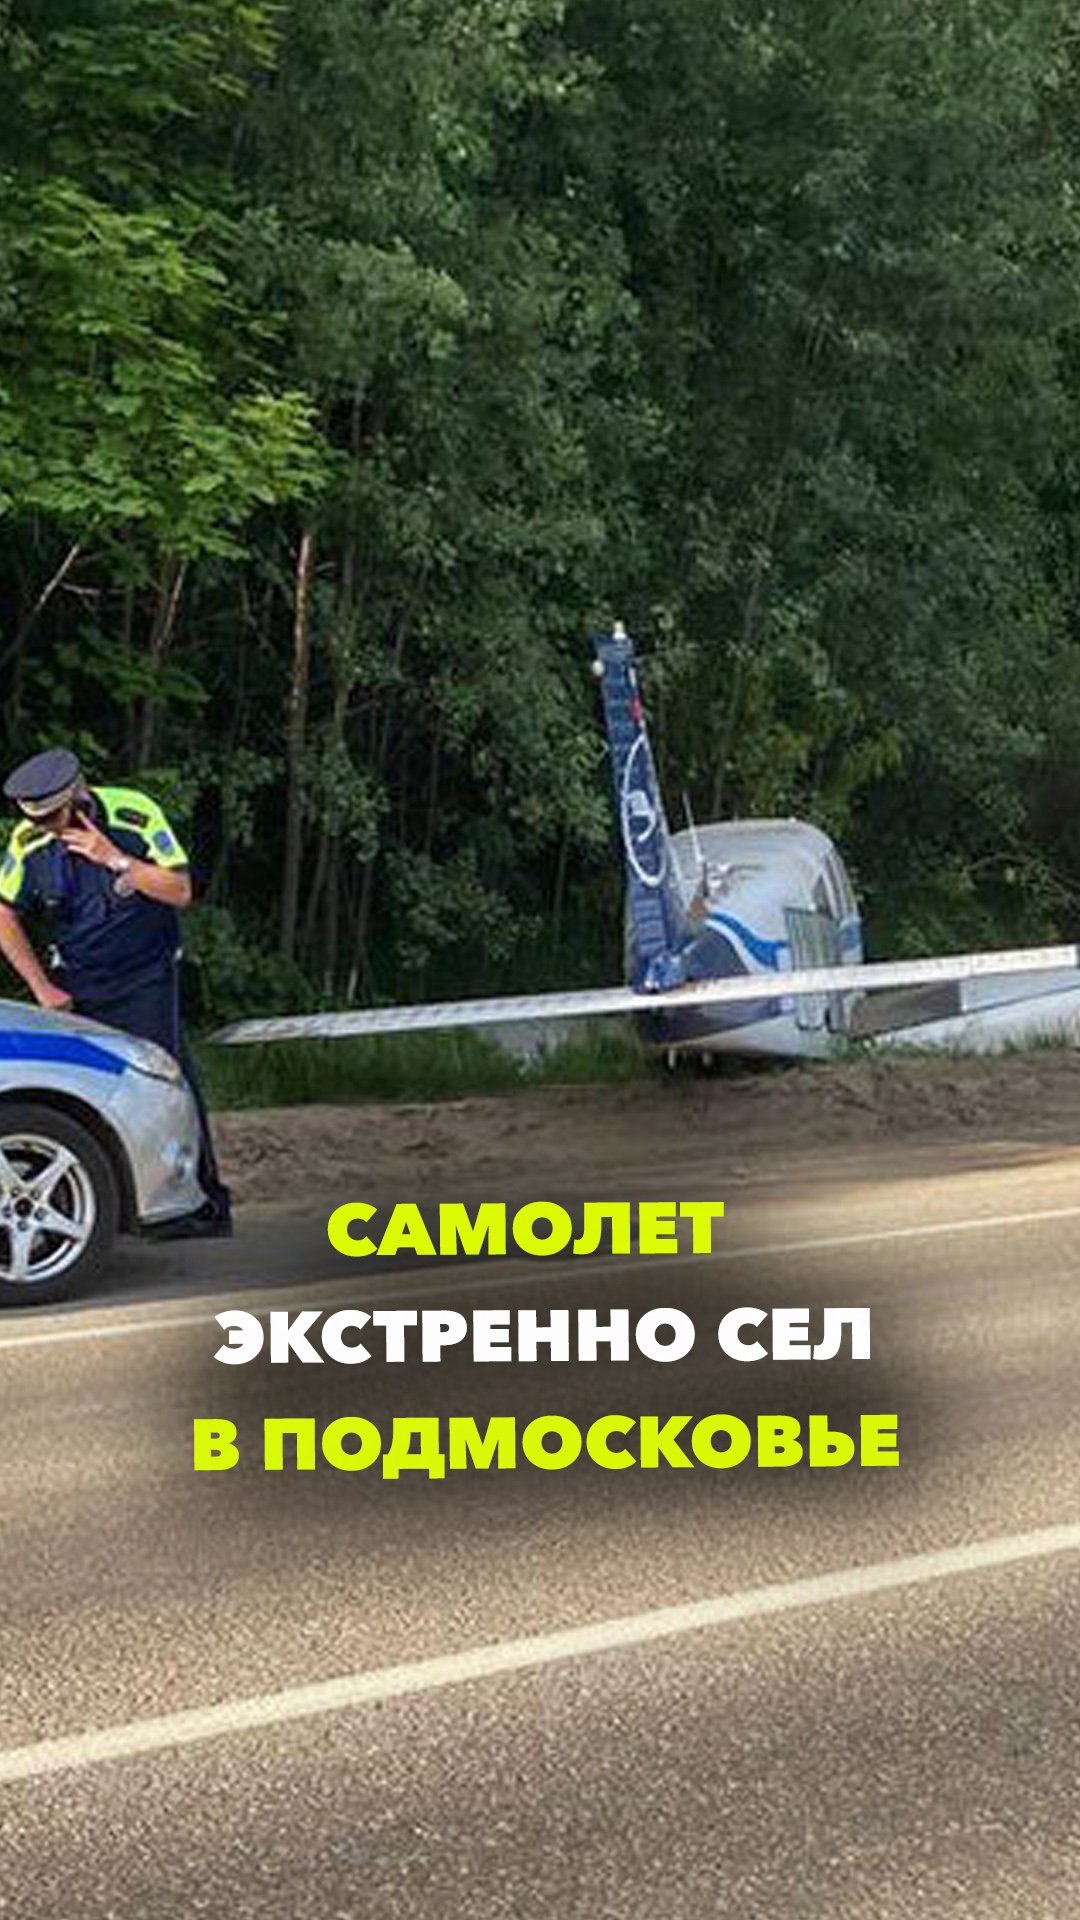 Самолет экстренно сел на шоссе в Подмосковье. Столкновения с автомобилями удалось чудом избежать